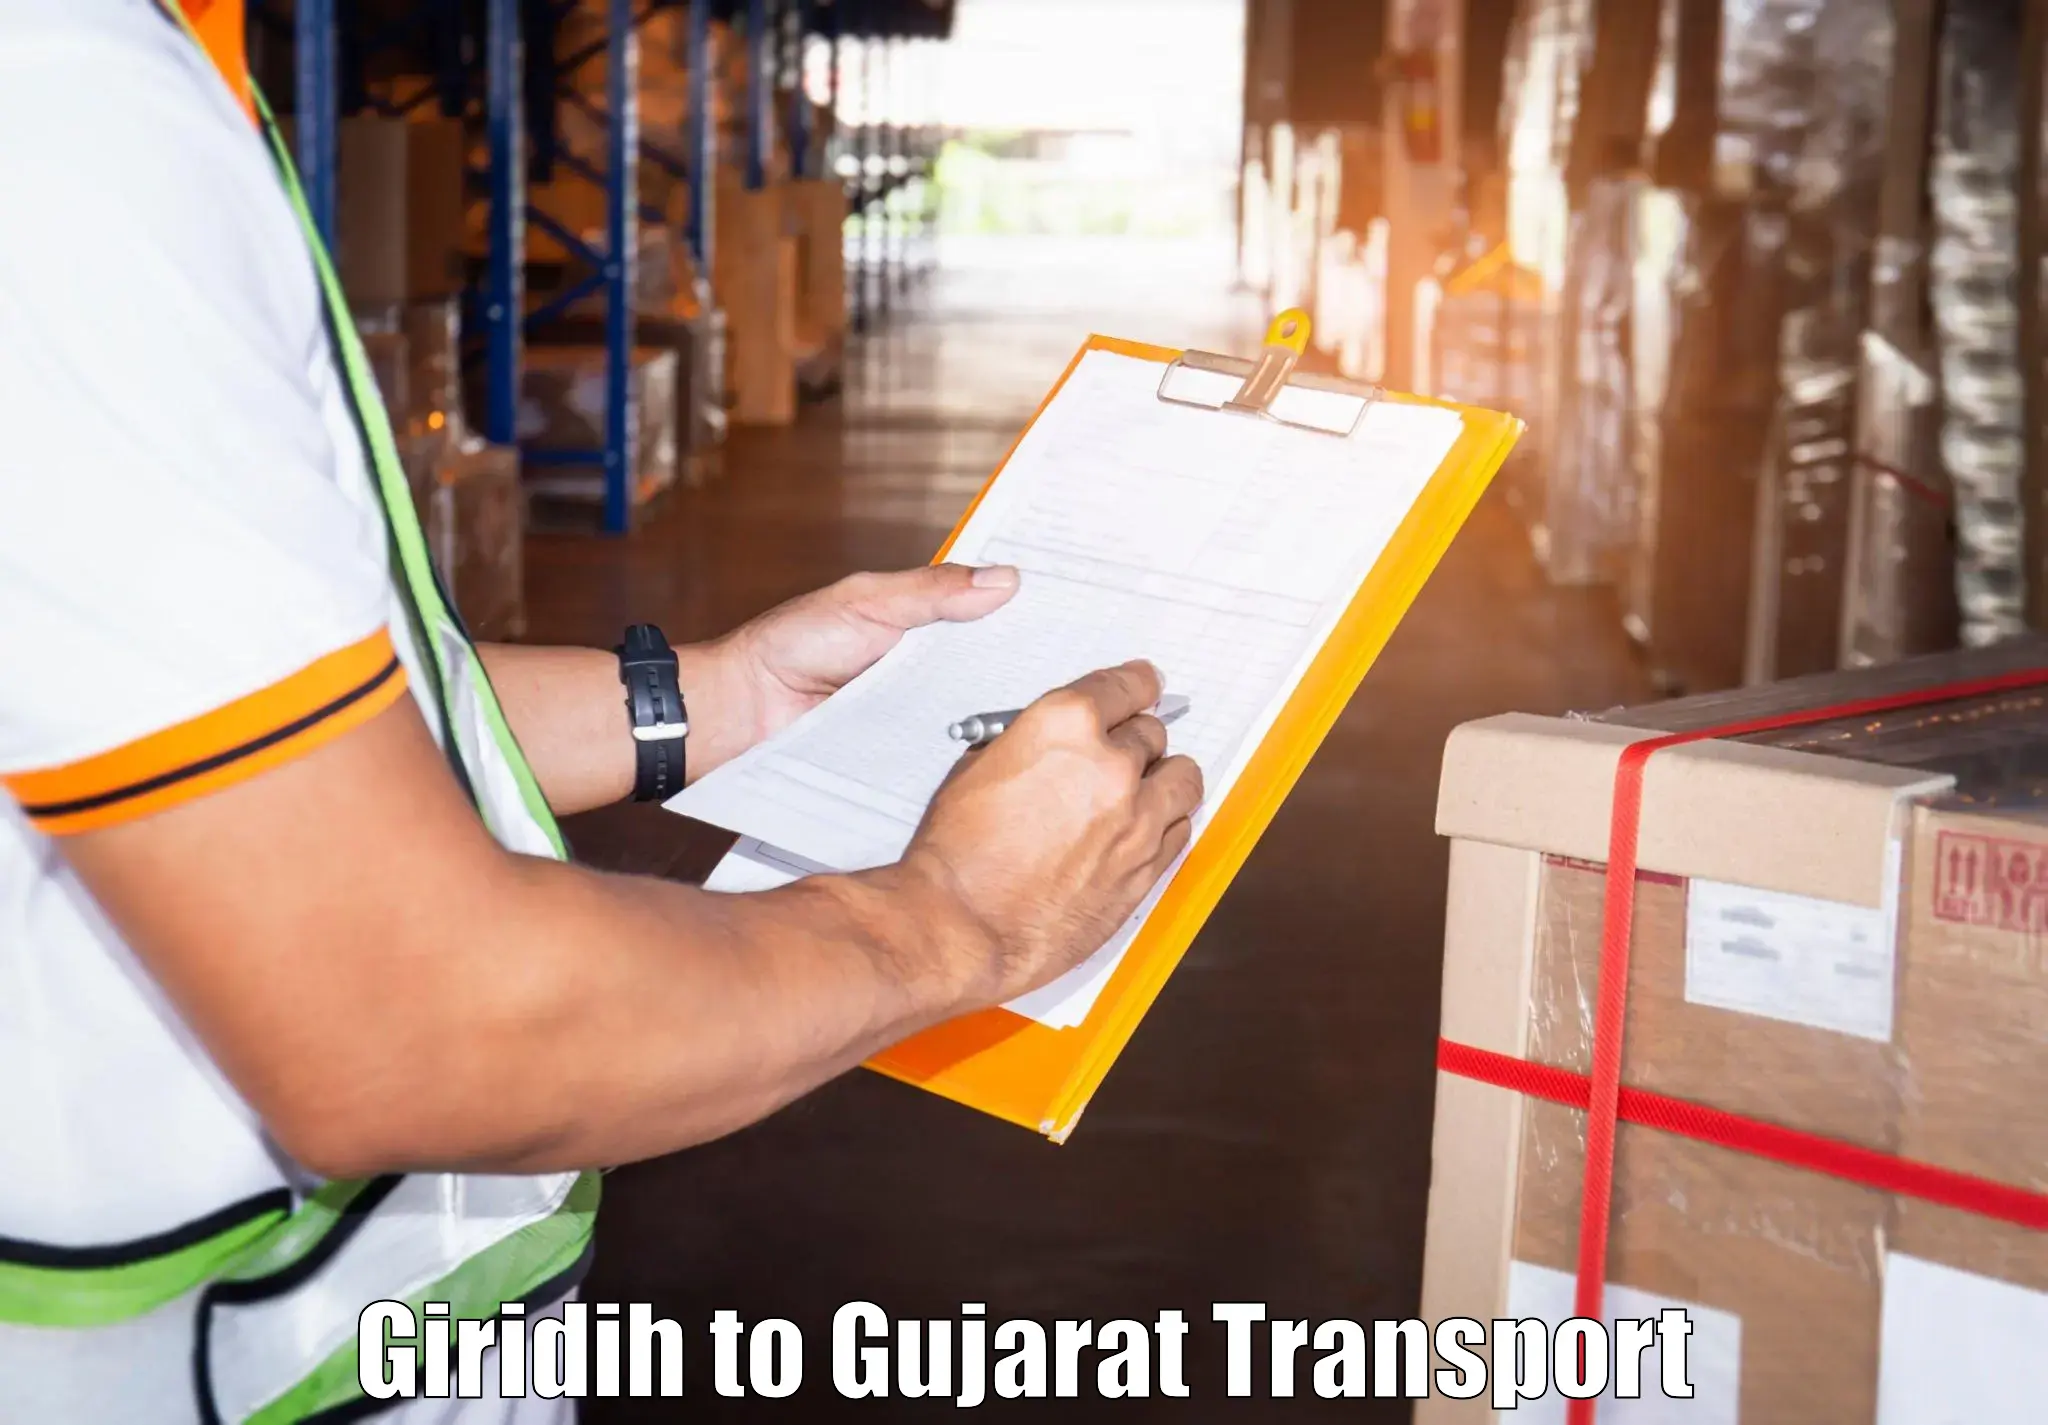 Online transport service Giridih to Dhrangadhra